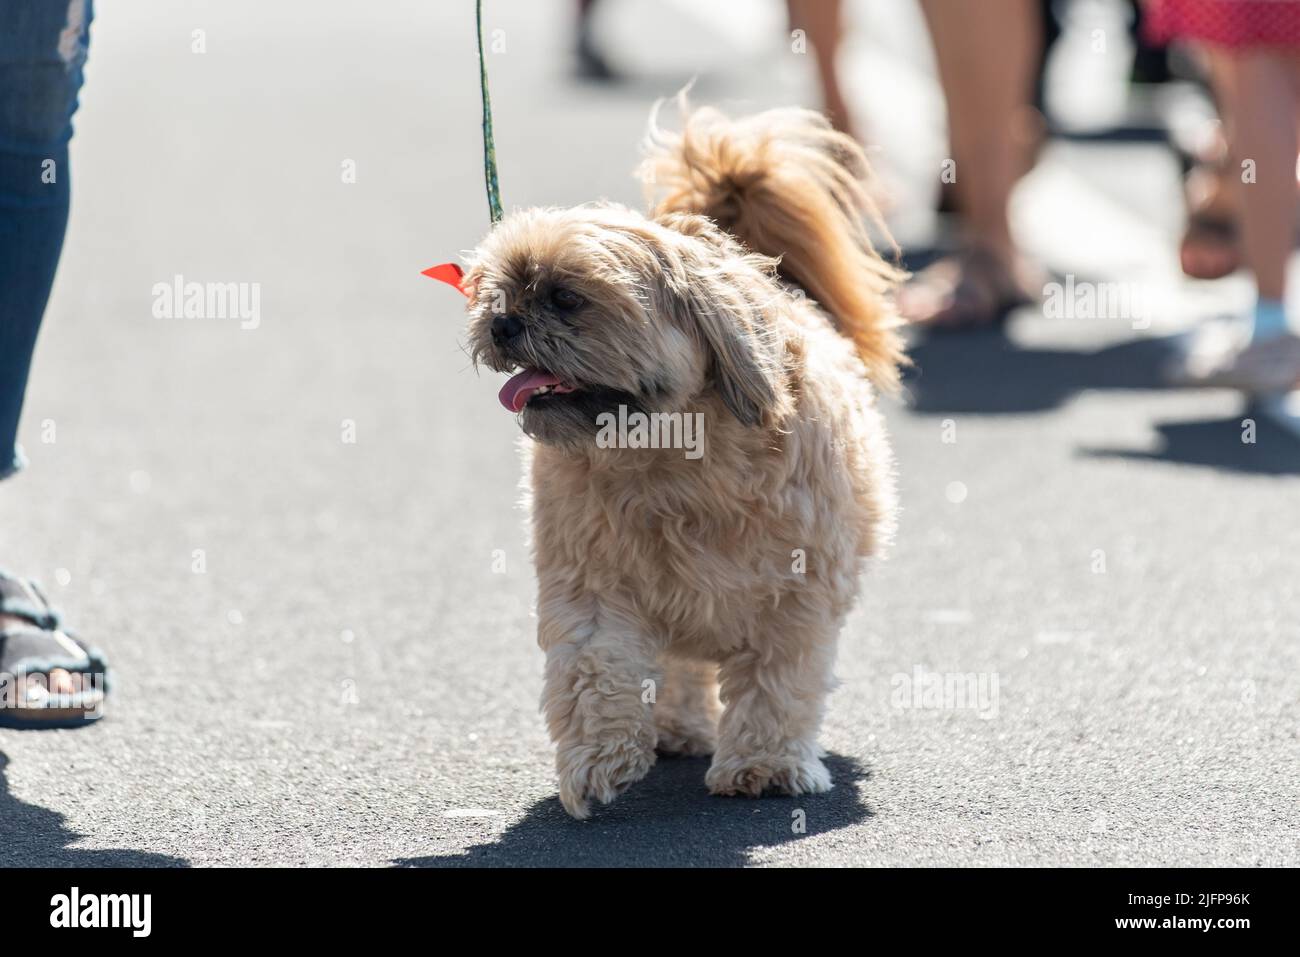 Die Holiday Parade in einer kleinen Stadt ist der perfekte Ort, um mit dem Shih Tzu-Hund mitten auf der Straße spazieren zu gehen. Stockfoto